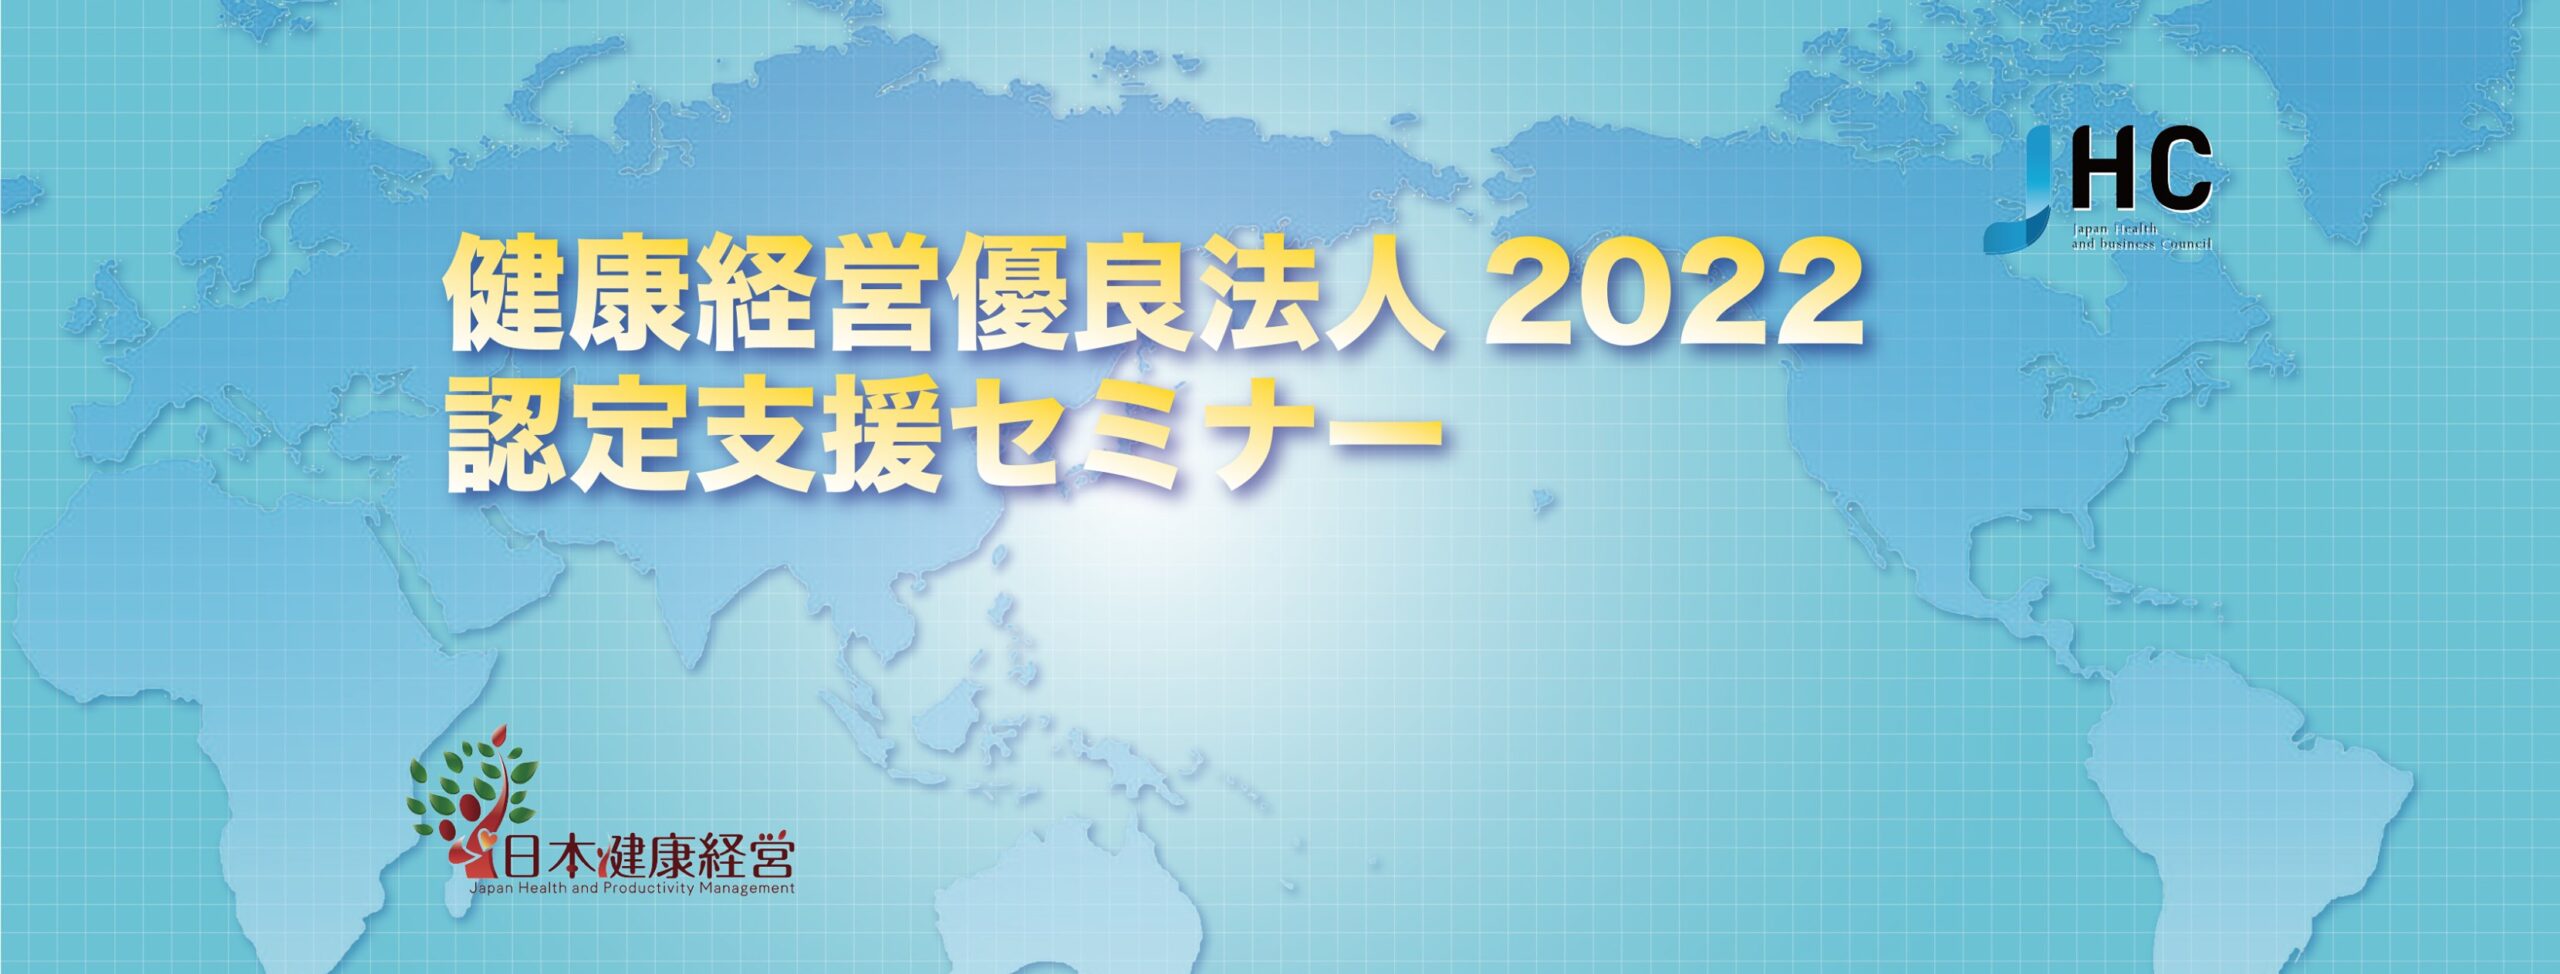 4/28(水)健康経営優良法人2022 認定支援Webセミナー